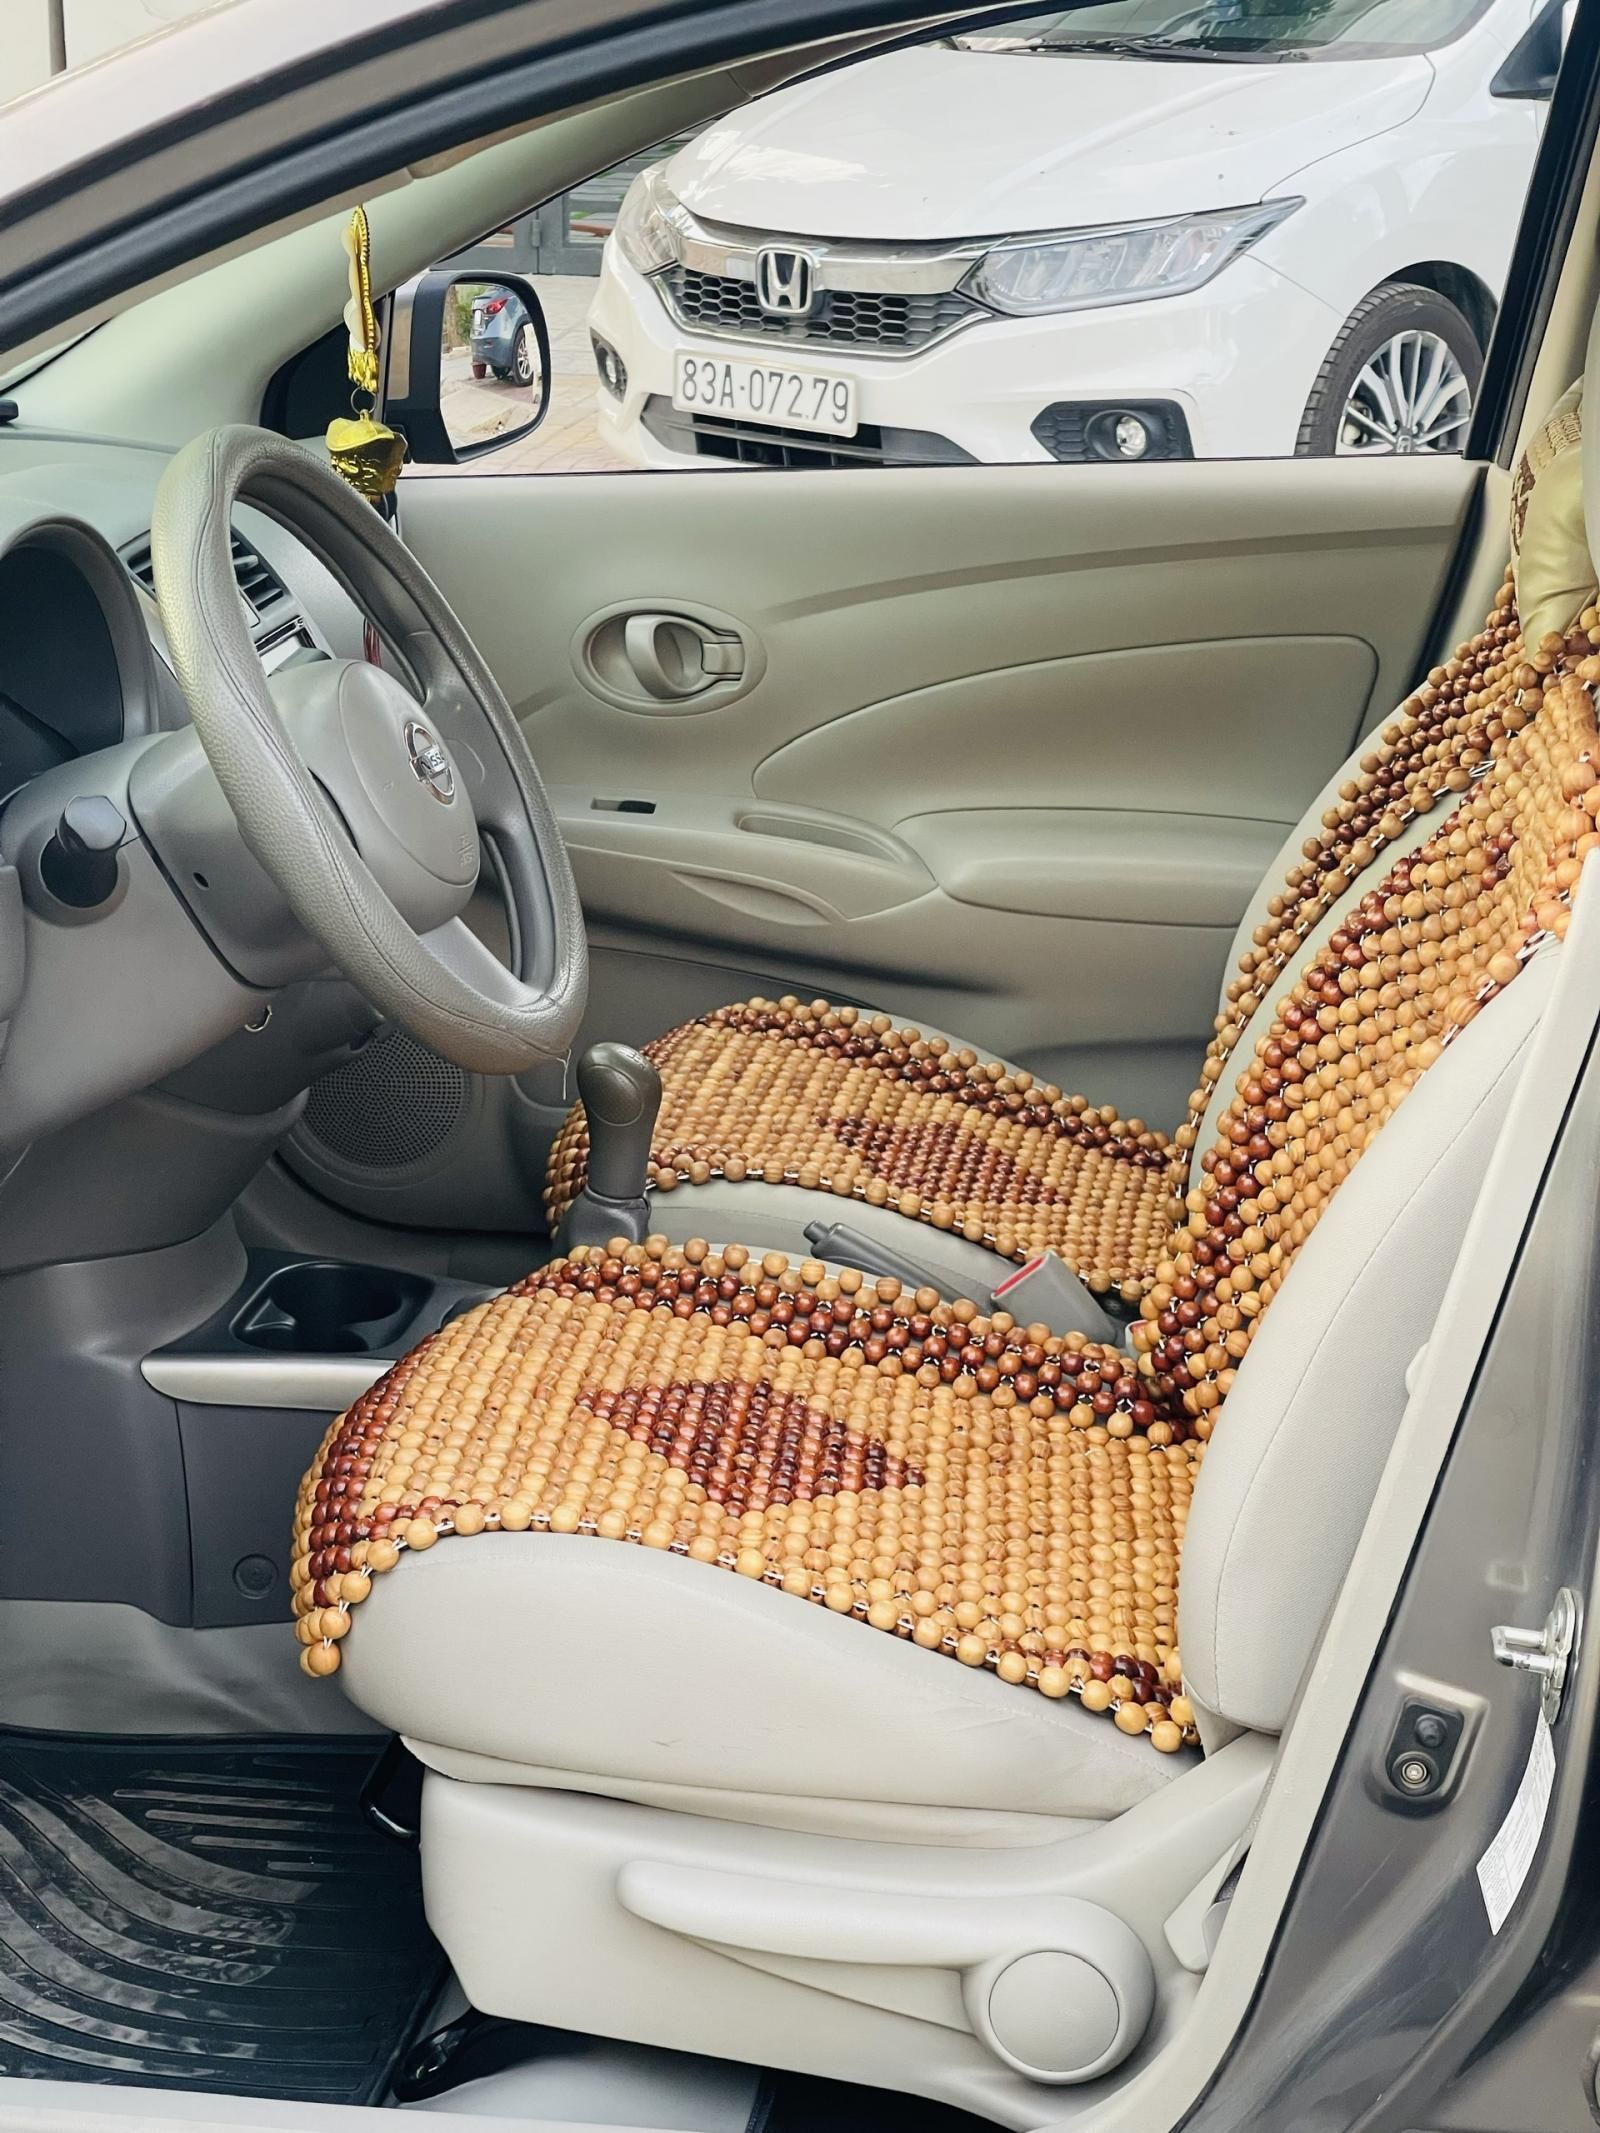 Nissan Sunny 2013 - Số sàn bao test check - bao giá toàn thị trường